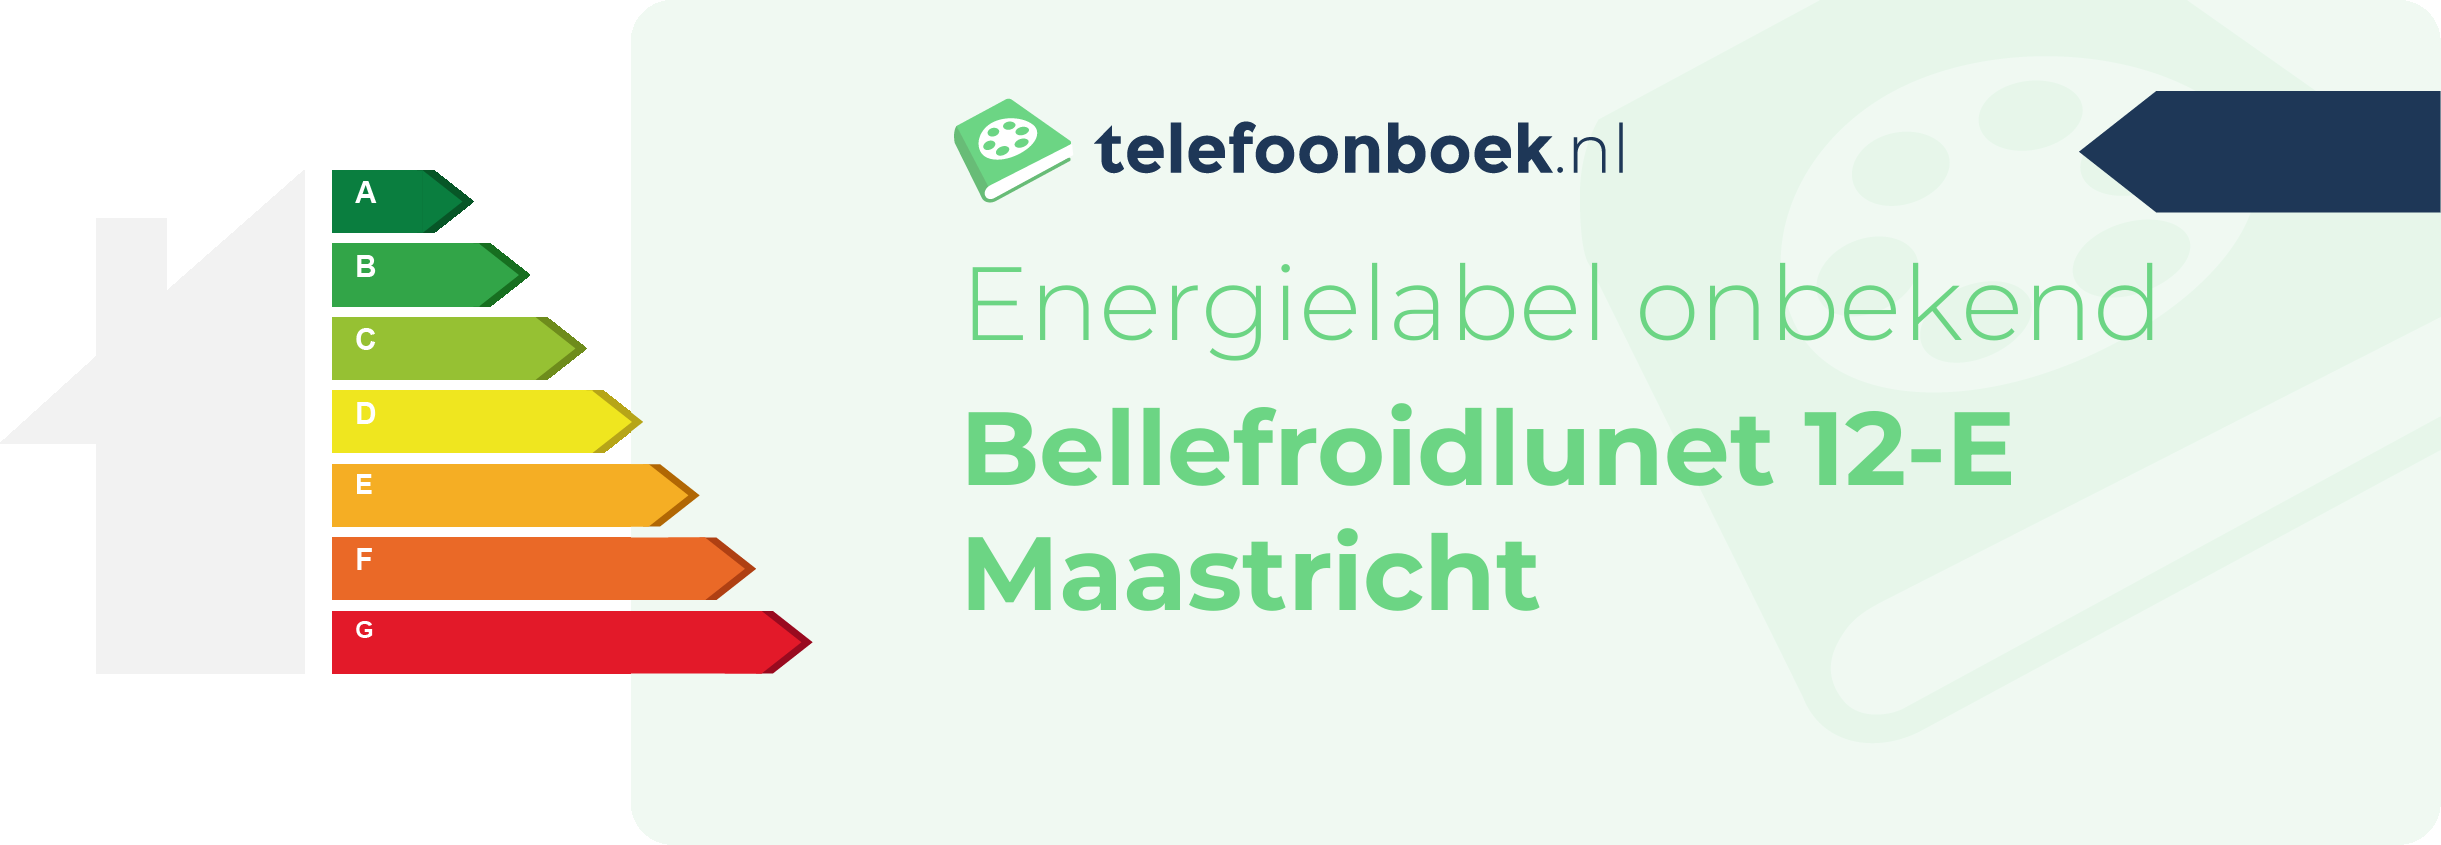 Energielabel Bellefroidlunet 12-E Maastricht